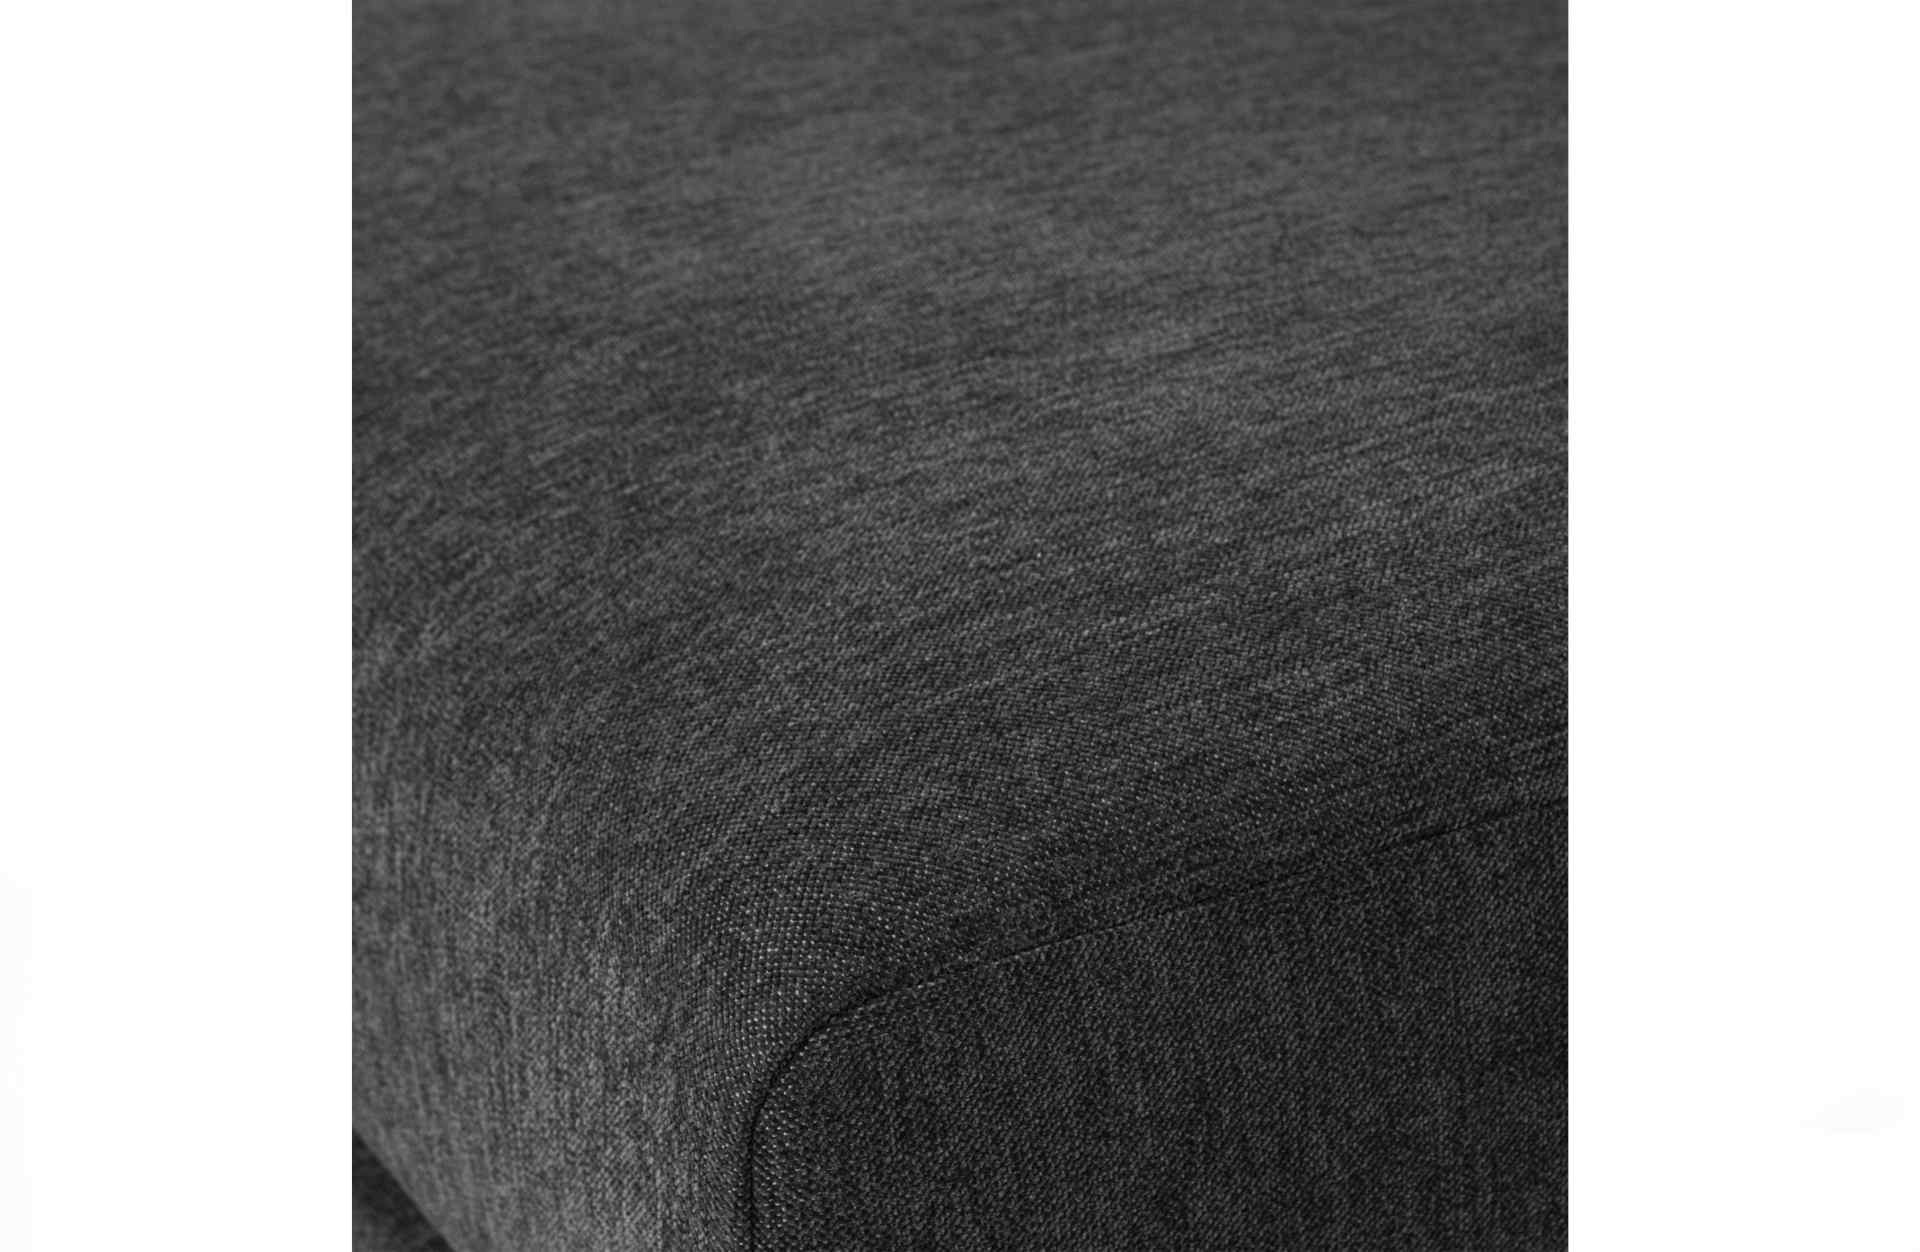 Das Modulsofa Couple Lounge überzeugt mit seinem modernen Design. Das Lounge Element mit der Ausführung 100 cm wurde aus Melange Stoff gefertigt, welcher einen einen dunkelgrauen Farbton besitzen. Das Gestell ist aus Metall und hat eine schwarze Farbe. Da